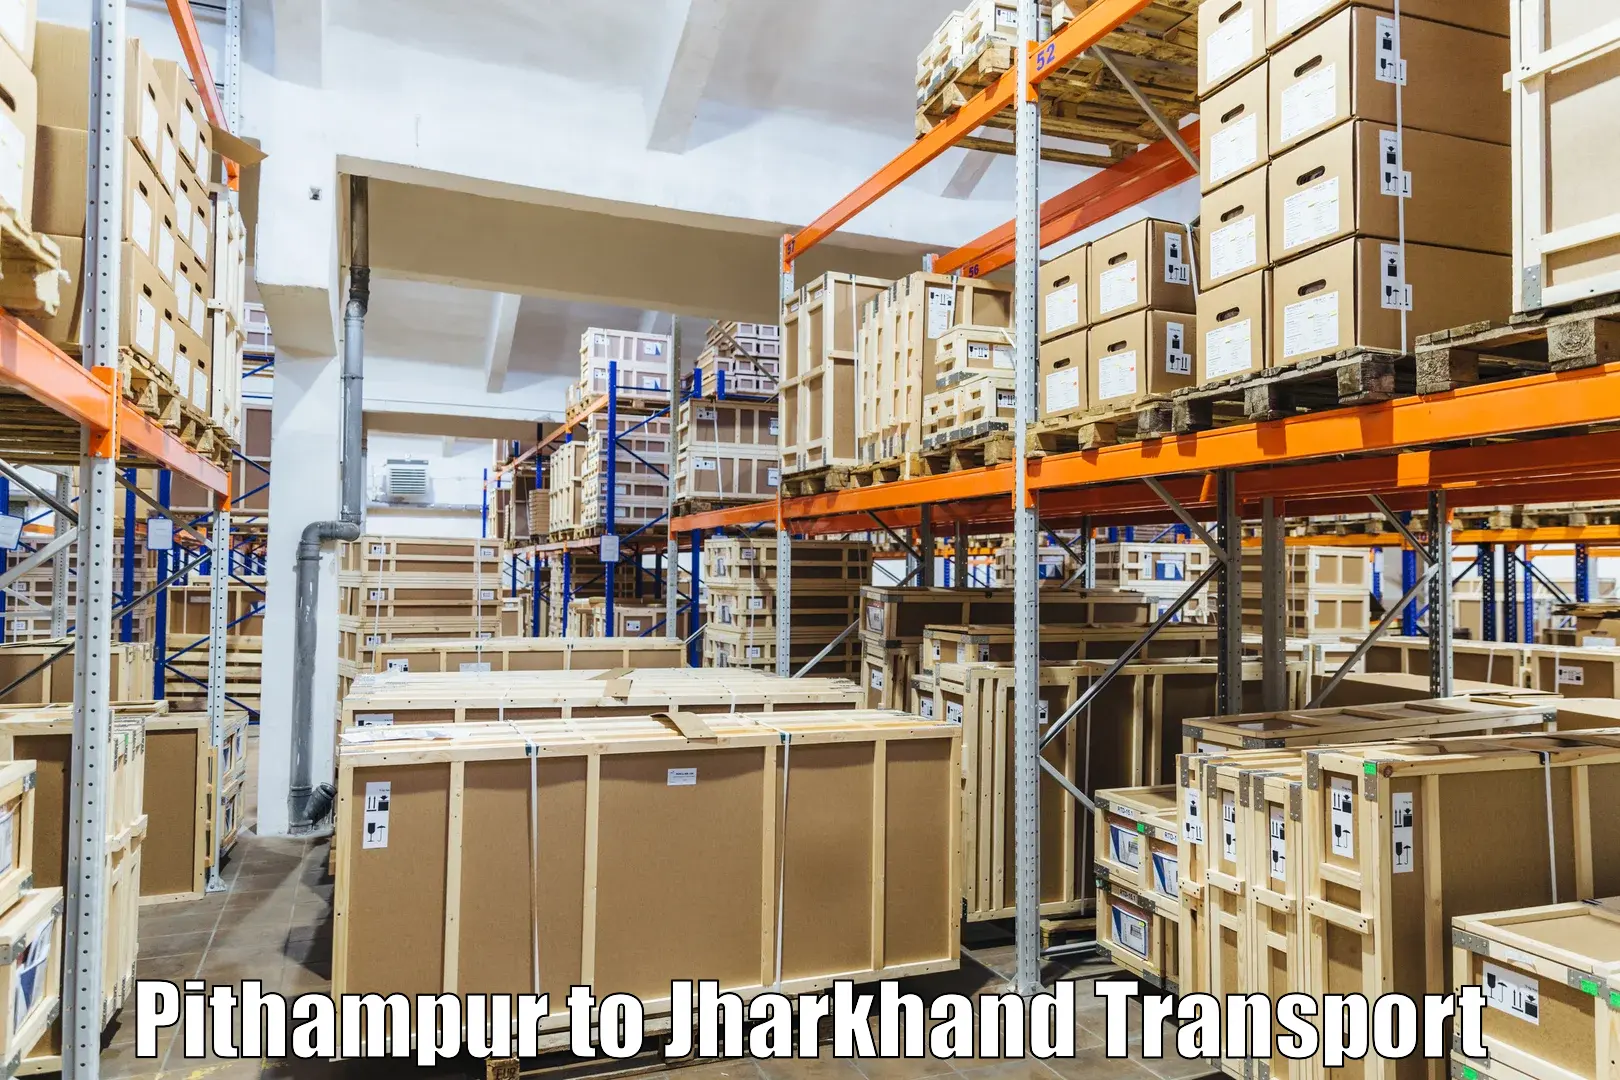 Online transport Pithampur to Giridih